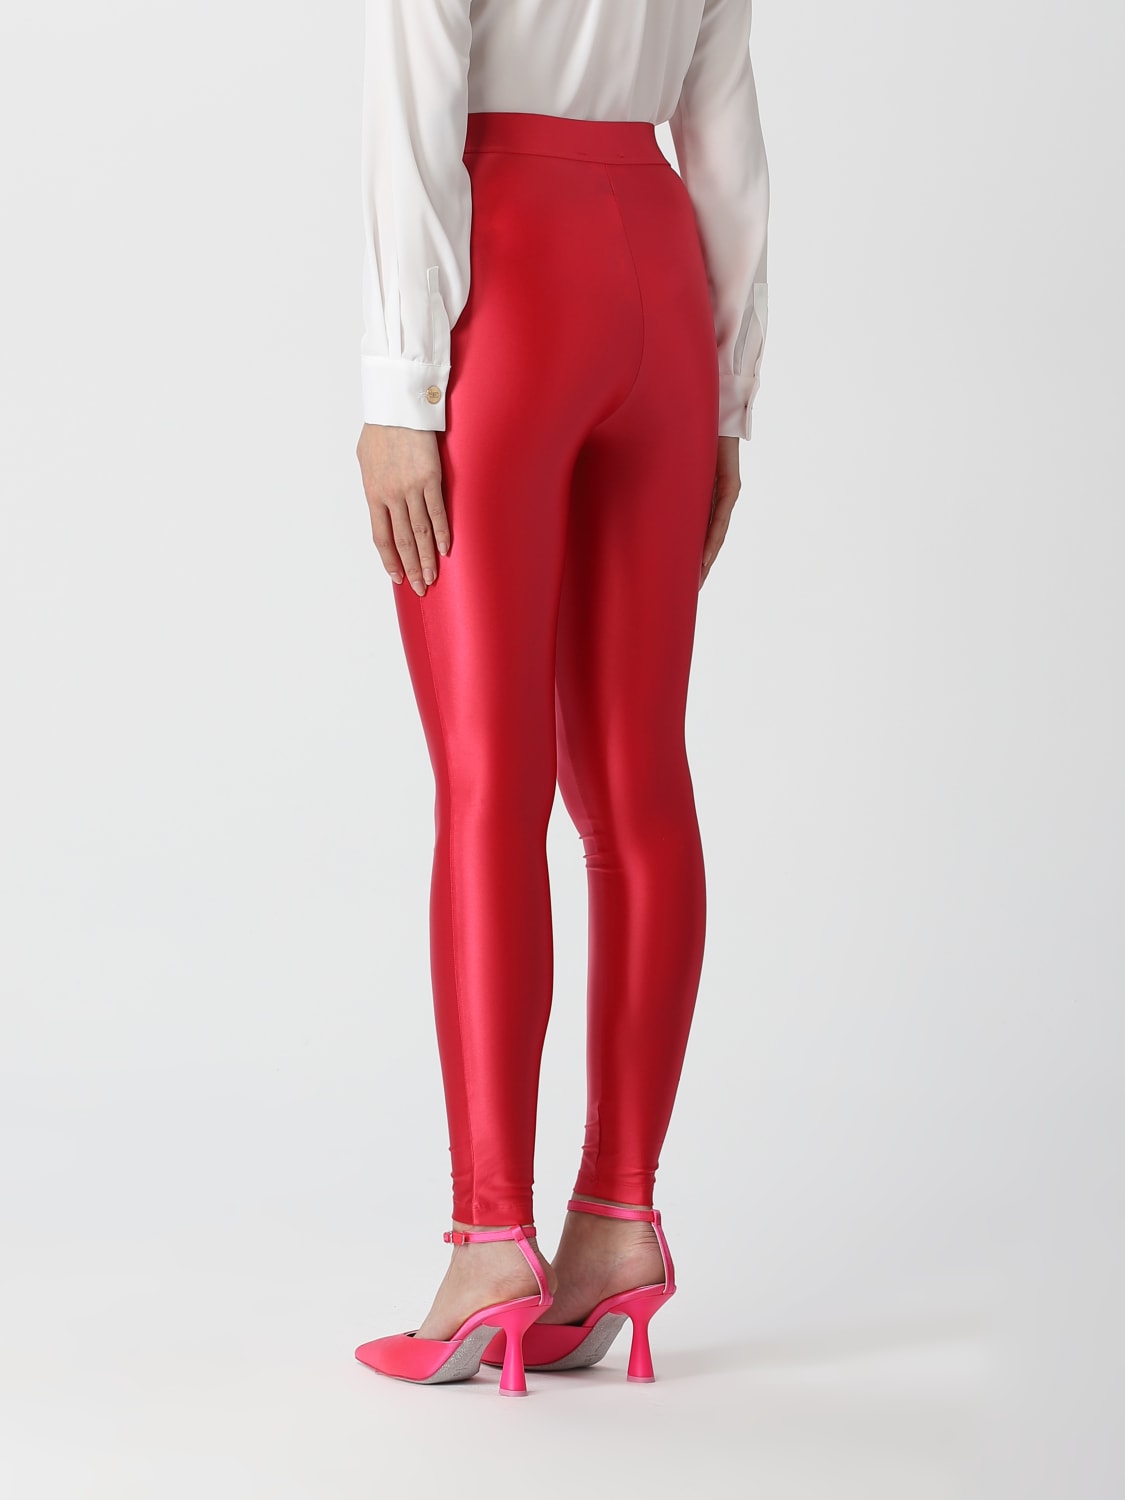 Vendita leggings rossi lucidi online